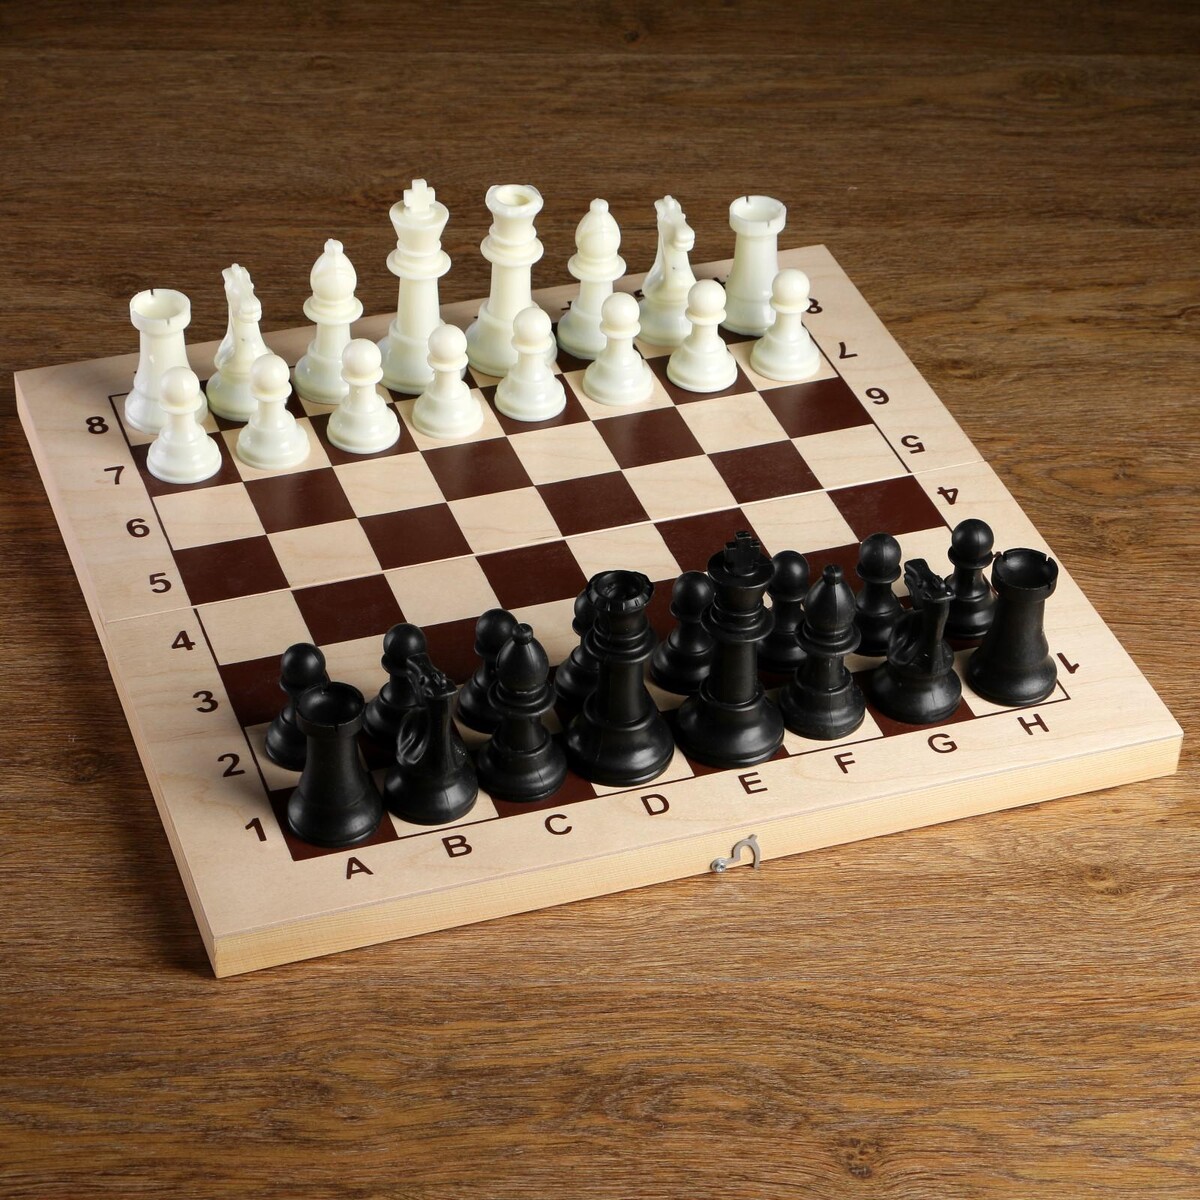 Шахматные фигуры, пластик, король h-10.5 см, пешка h-5 см шахматные фигуры гроссмейстерские